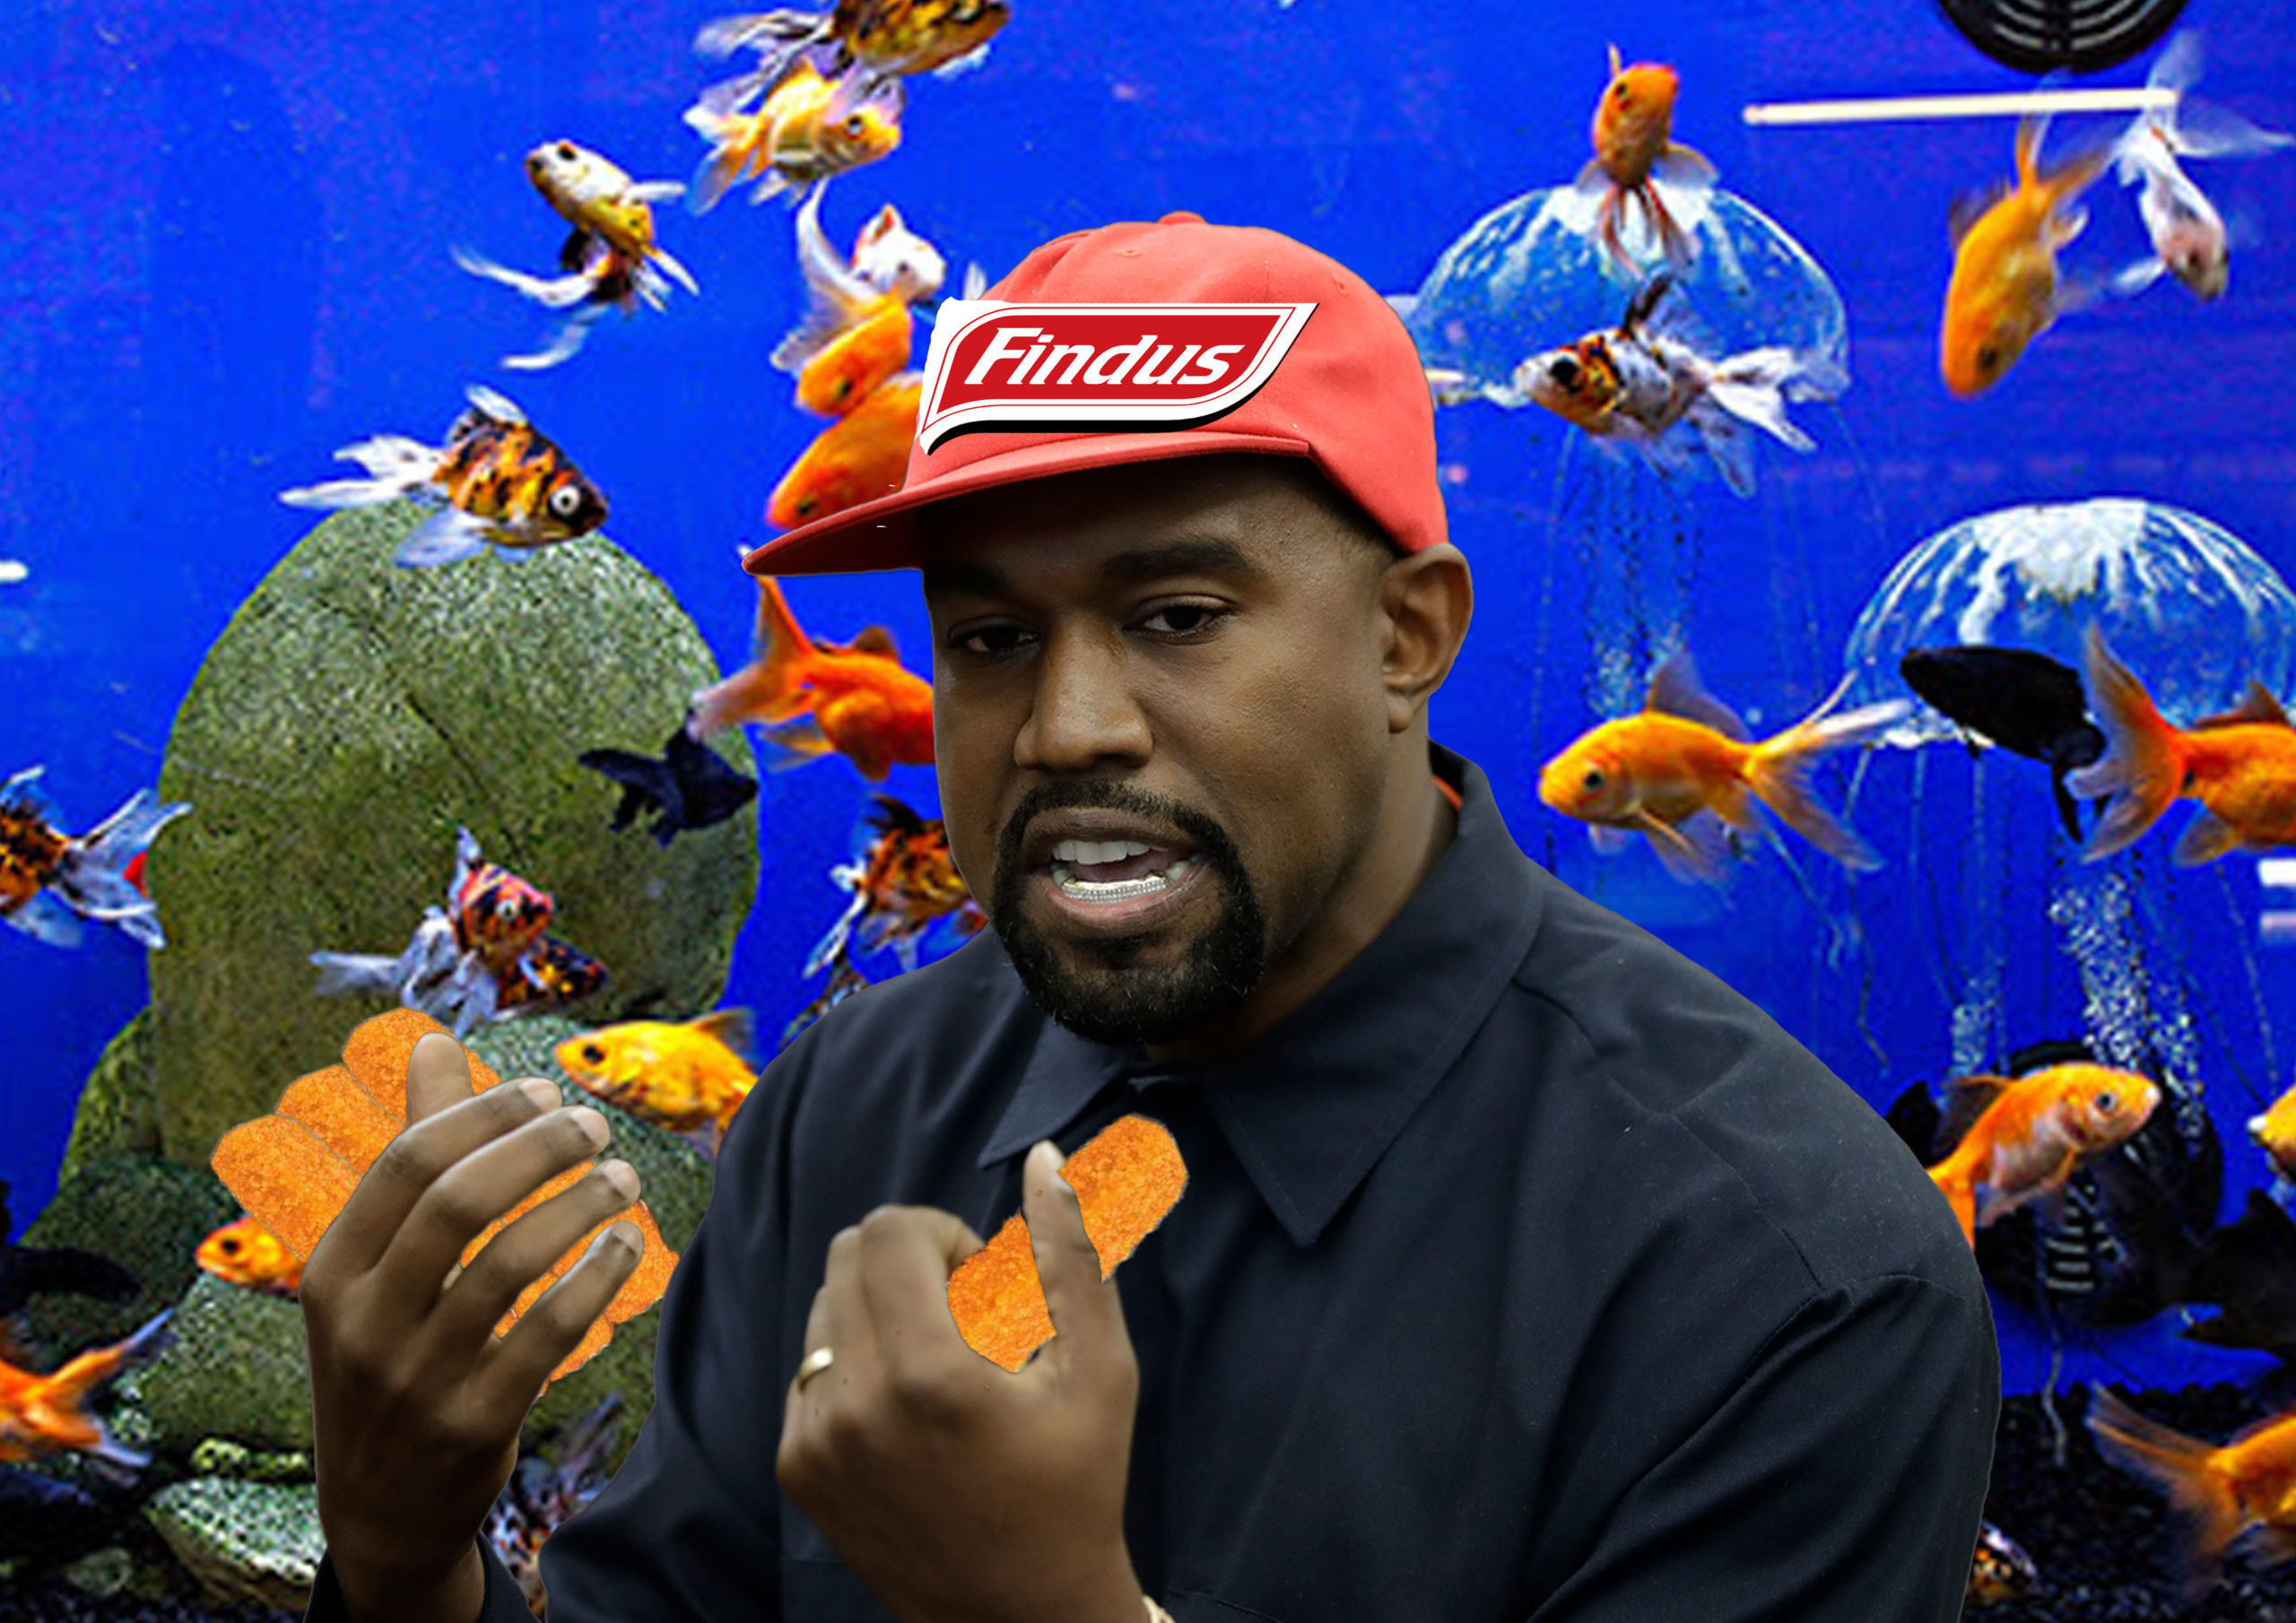 Kanye West élu Président de Findus